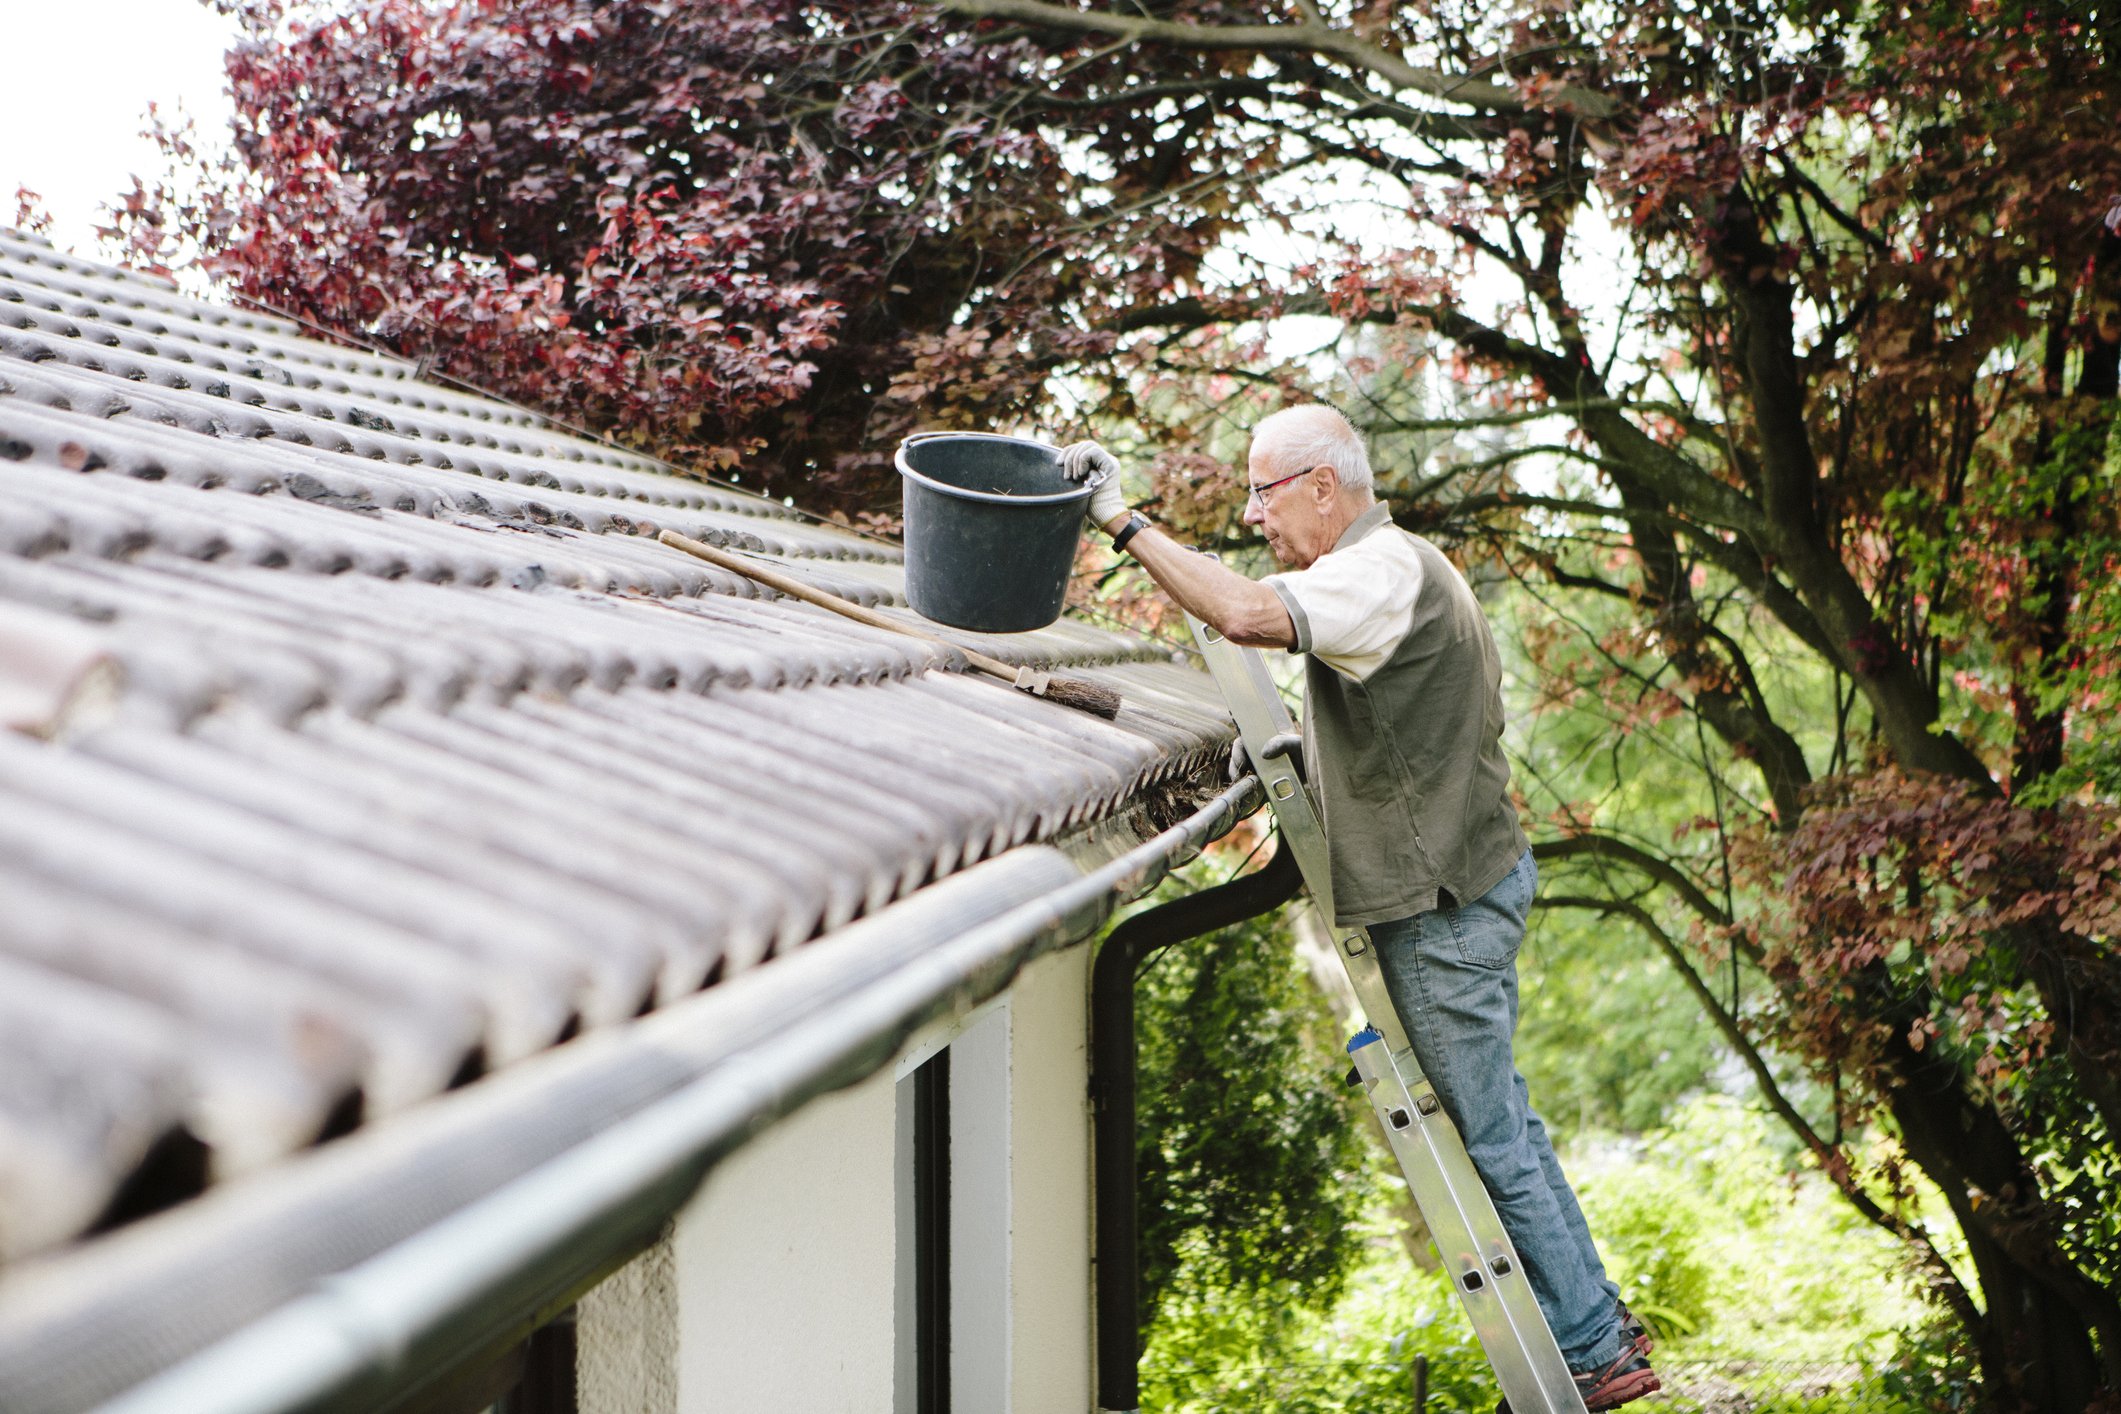 Ein älterer Mann steht auf Leiter und reinigt eine Dachrinne | Quelle: Getty Images